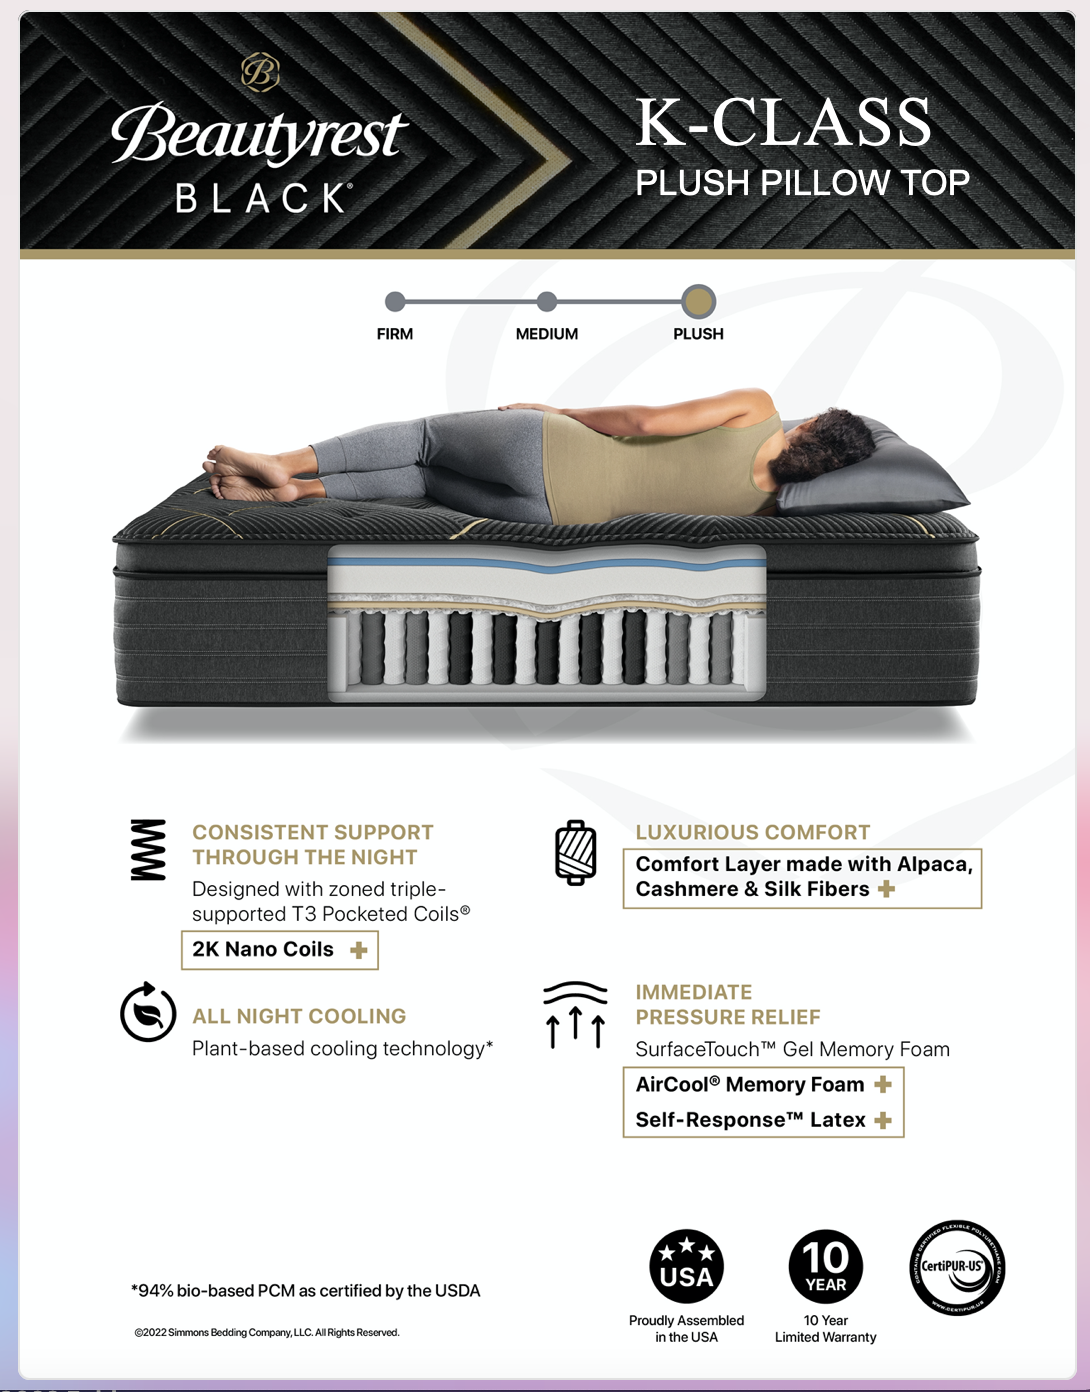 Beautyrest Black K-Class Plush Pillow Top specs